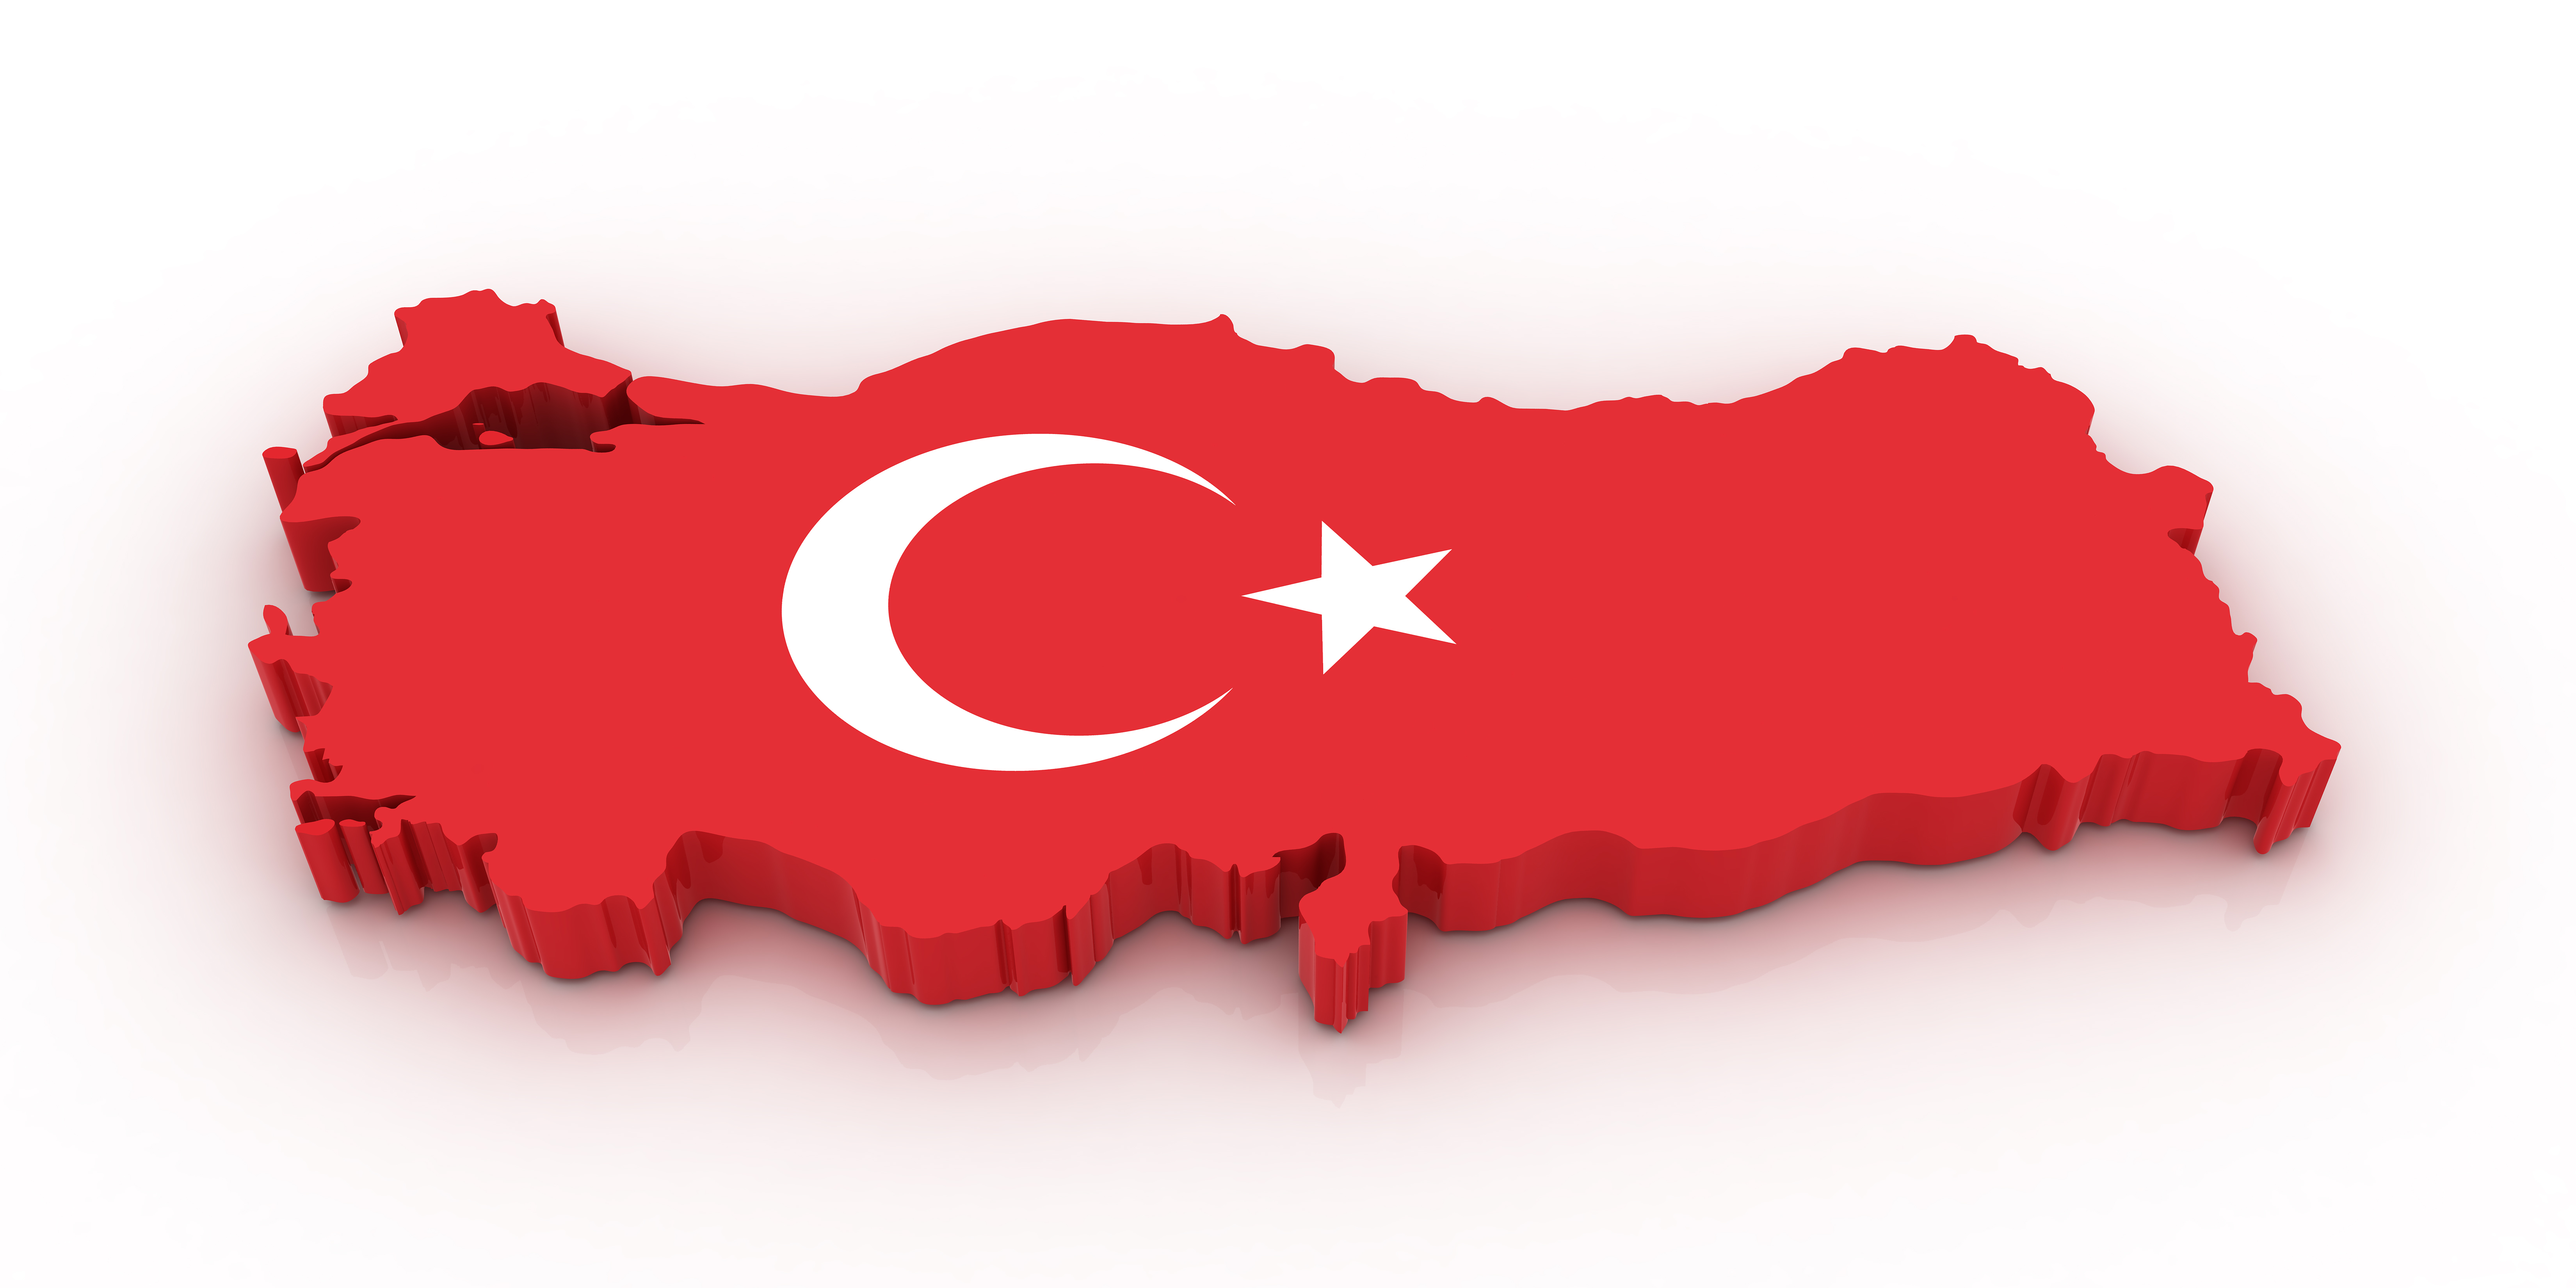 خرید اختصاصی ویلا و آپارتمان در استانبول، آنتالیا و آلانیای ترکیه را به ما بسپارید